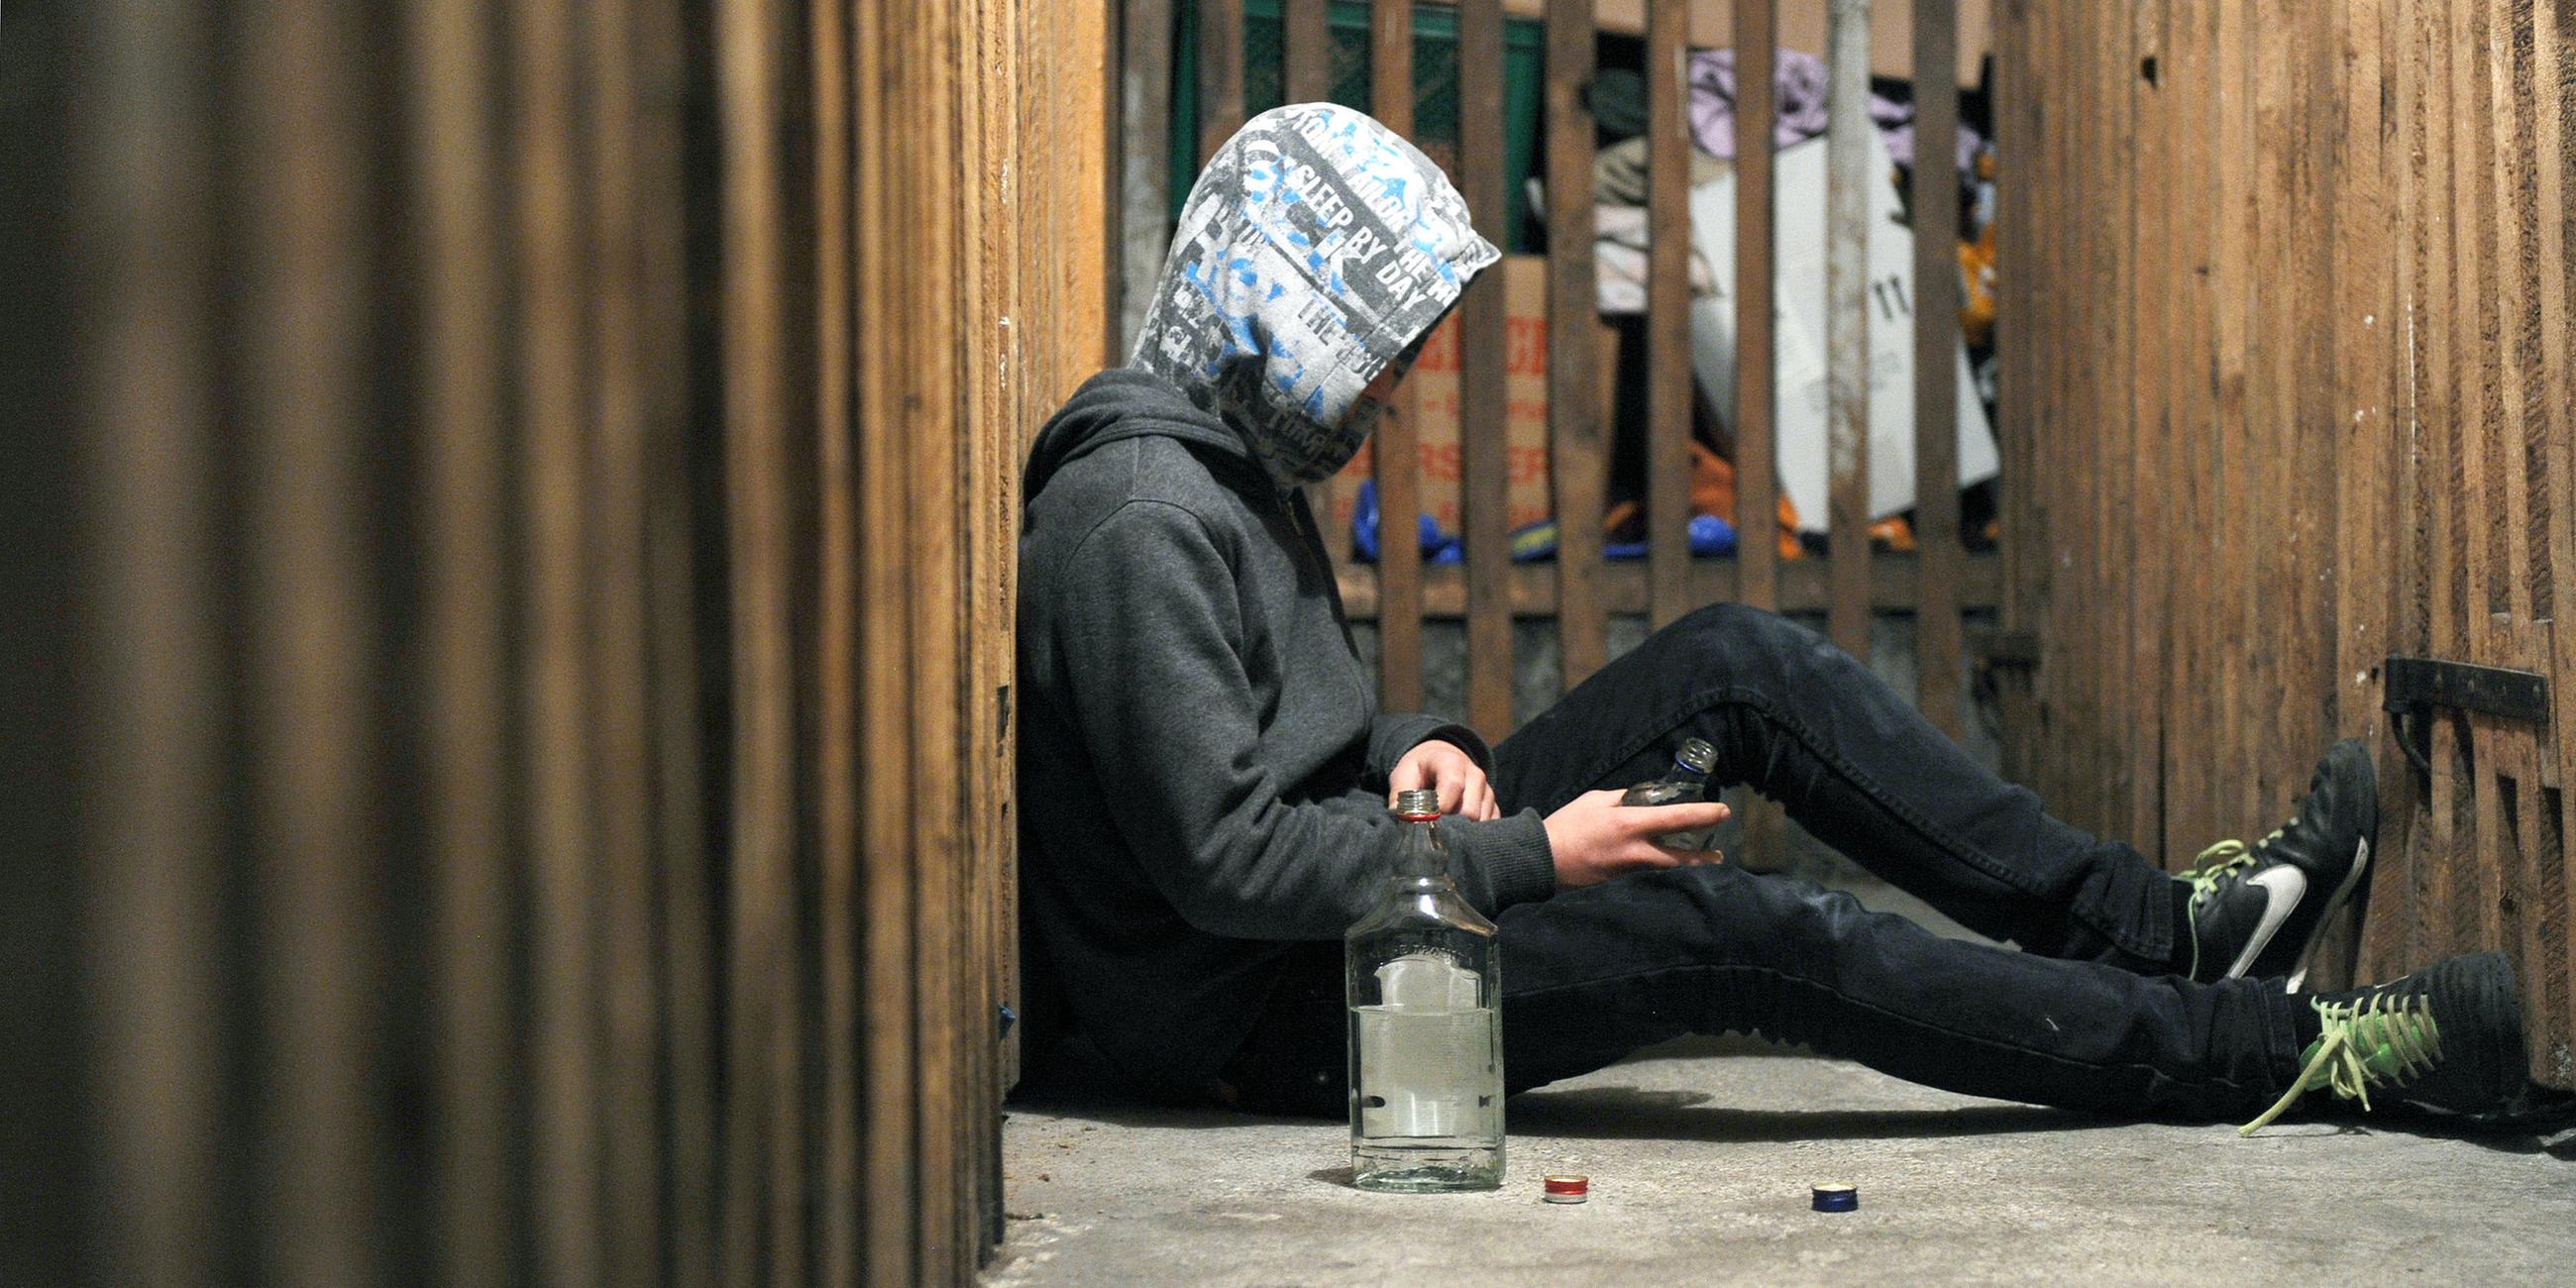 Jugendlicher mit Alkohol, aufgenommen am 09.12.2014